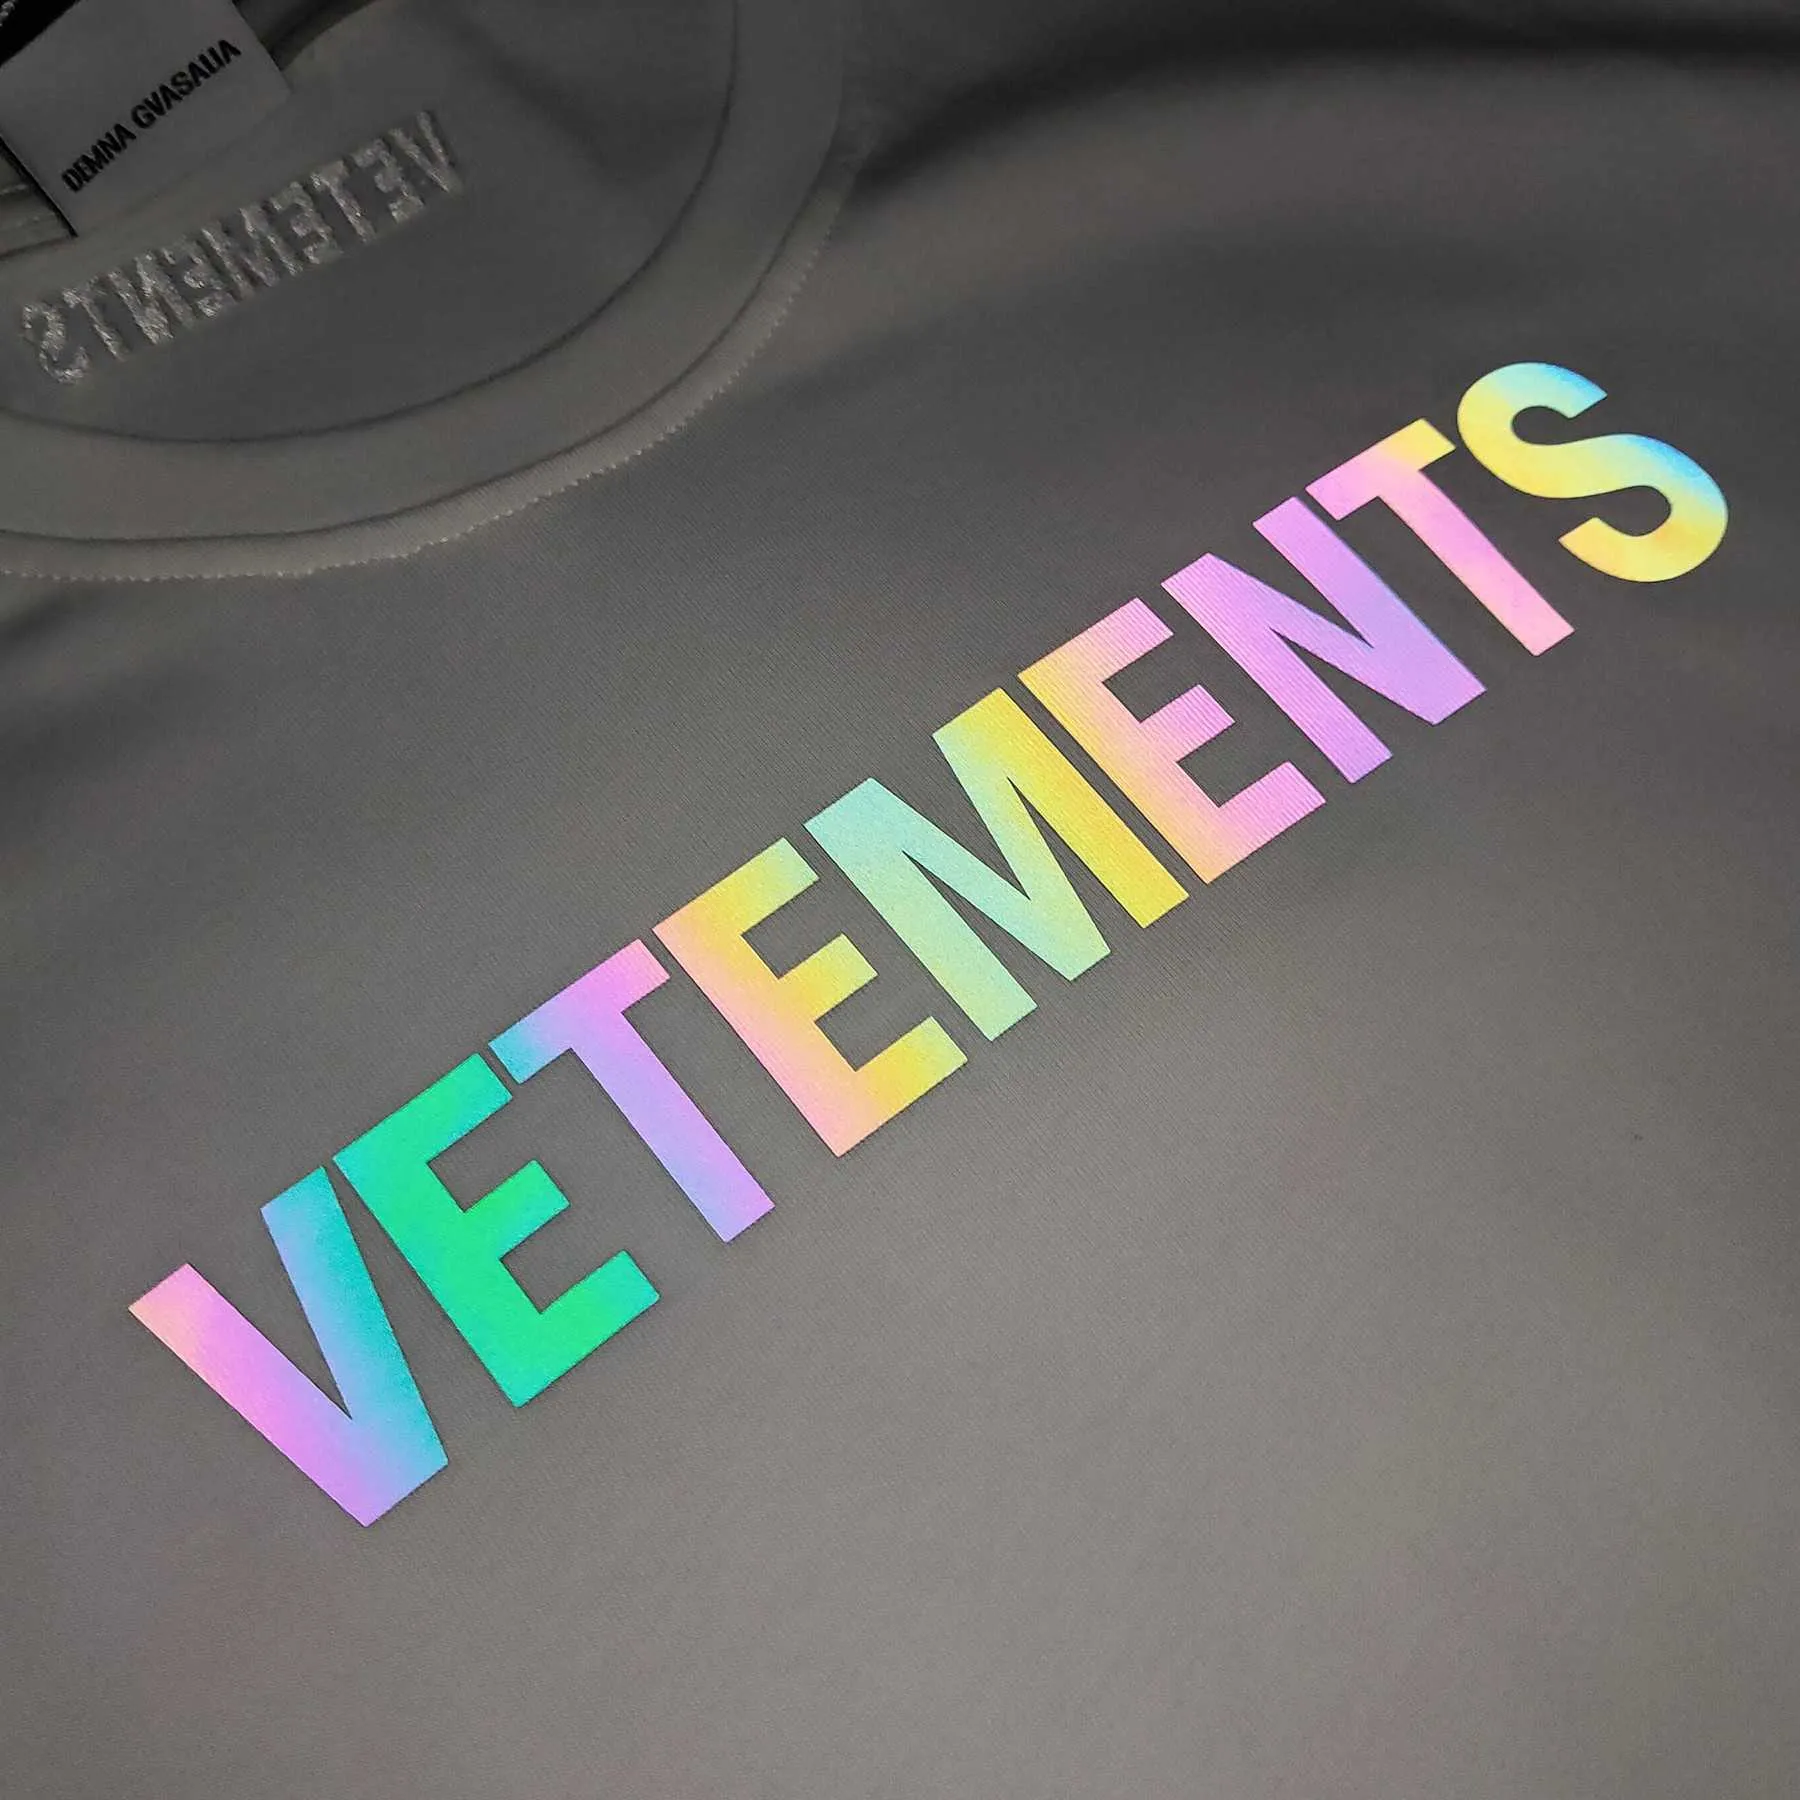 Vetements T-shirt Män kvinnor 1: 1 Heterokromism av hög kvalitet.